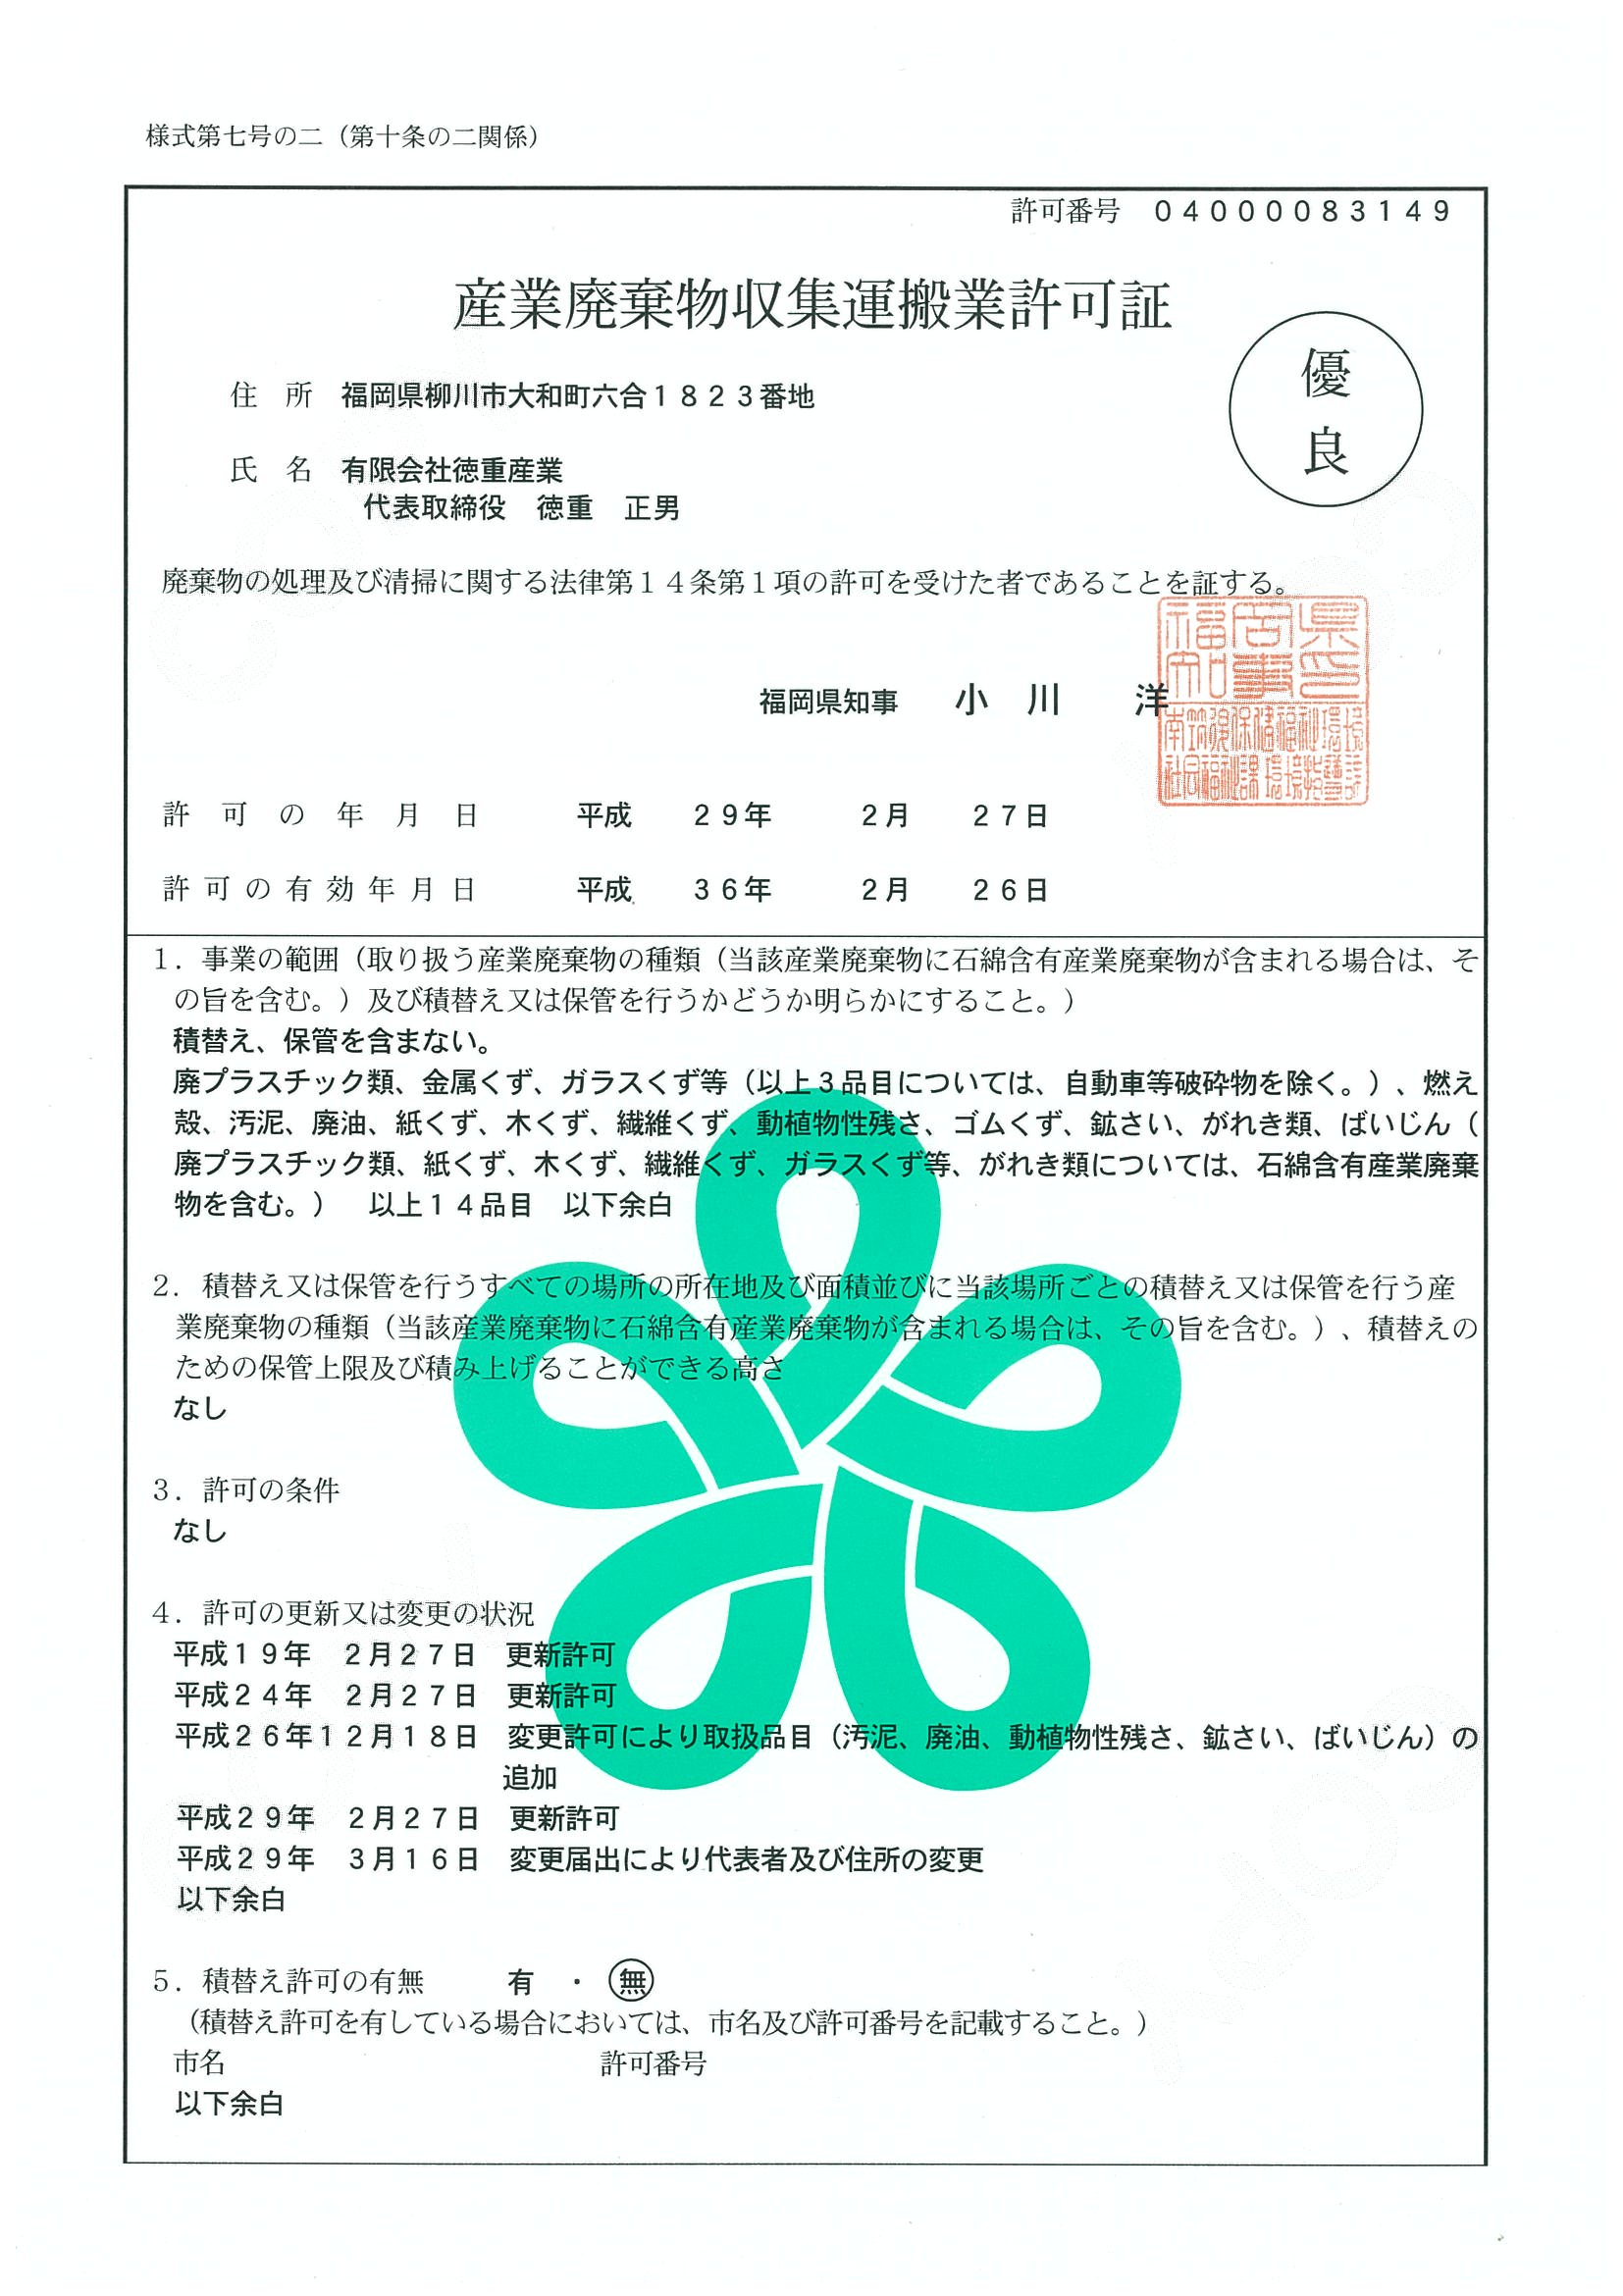 産業廃棄物収集運搬業許可証(福岡)